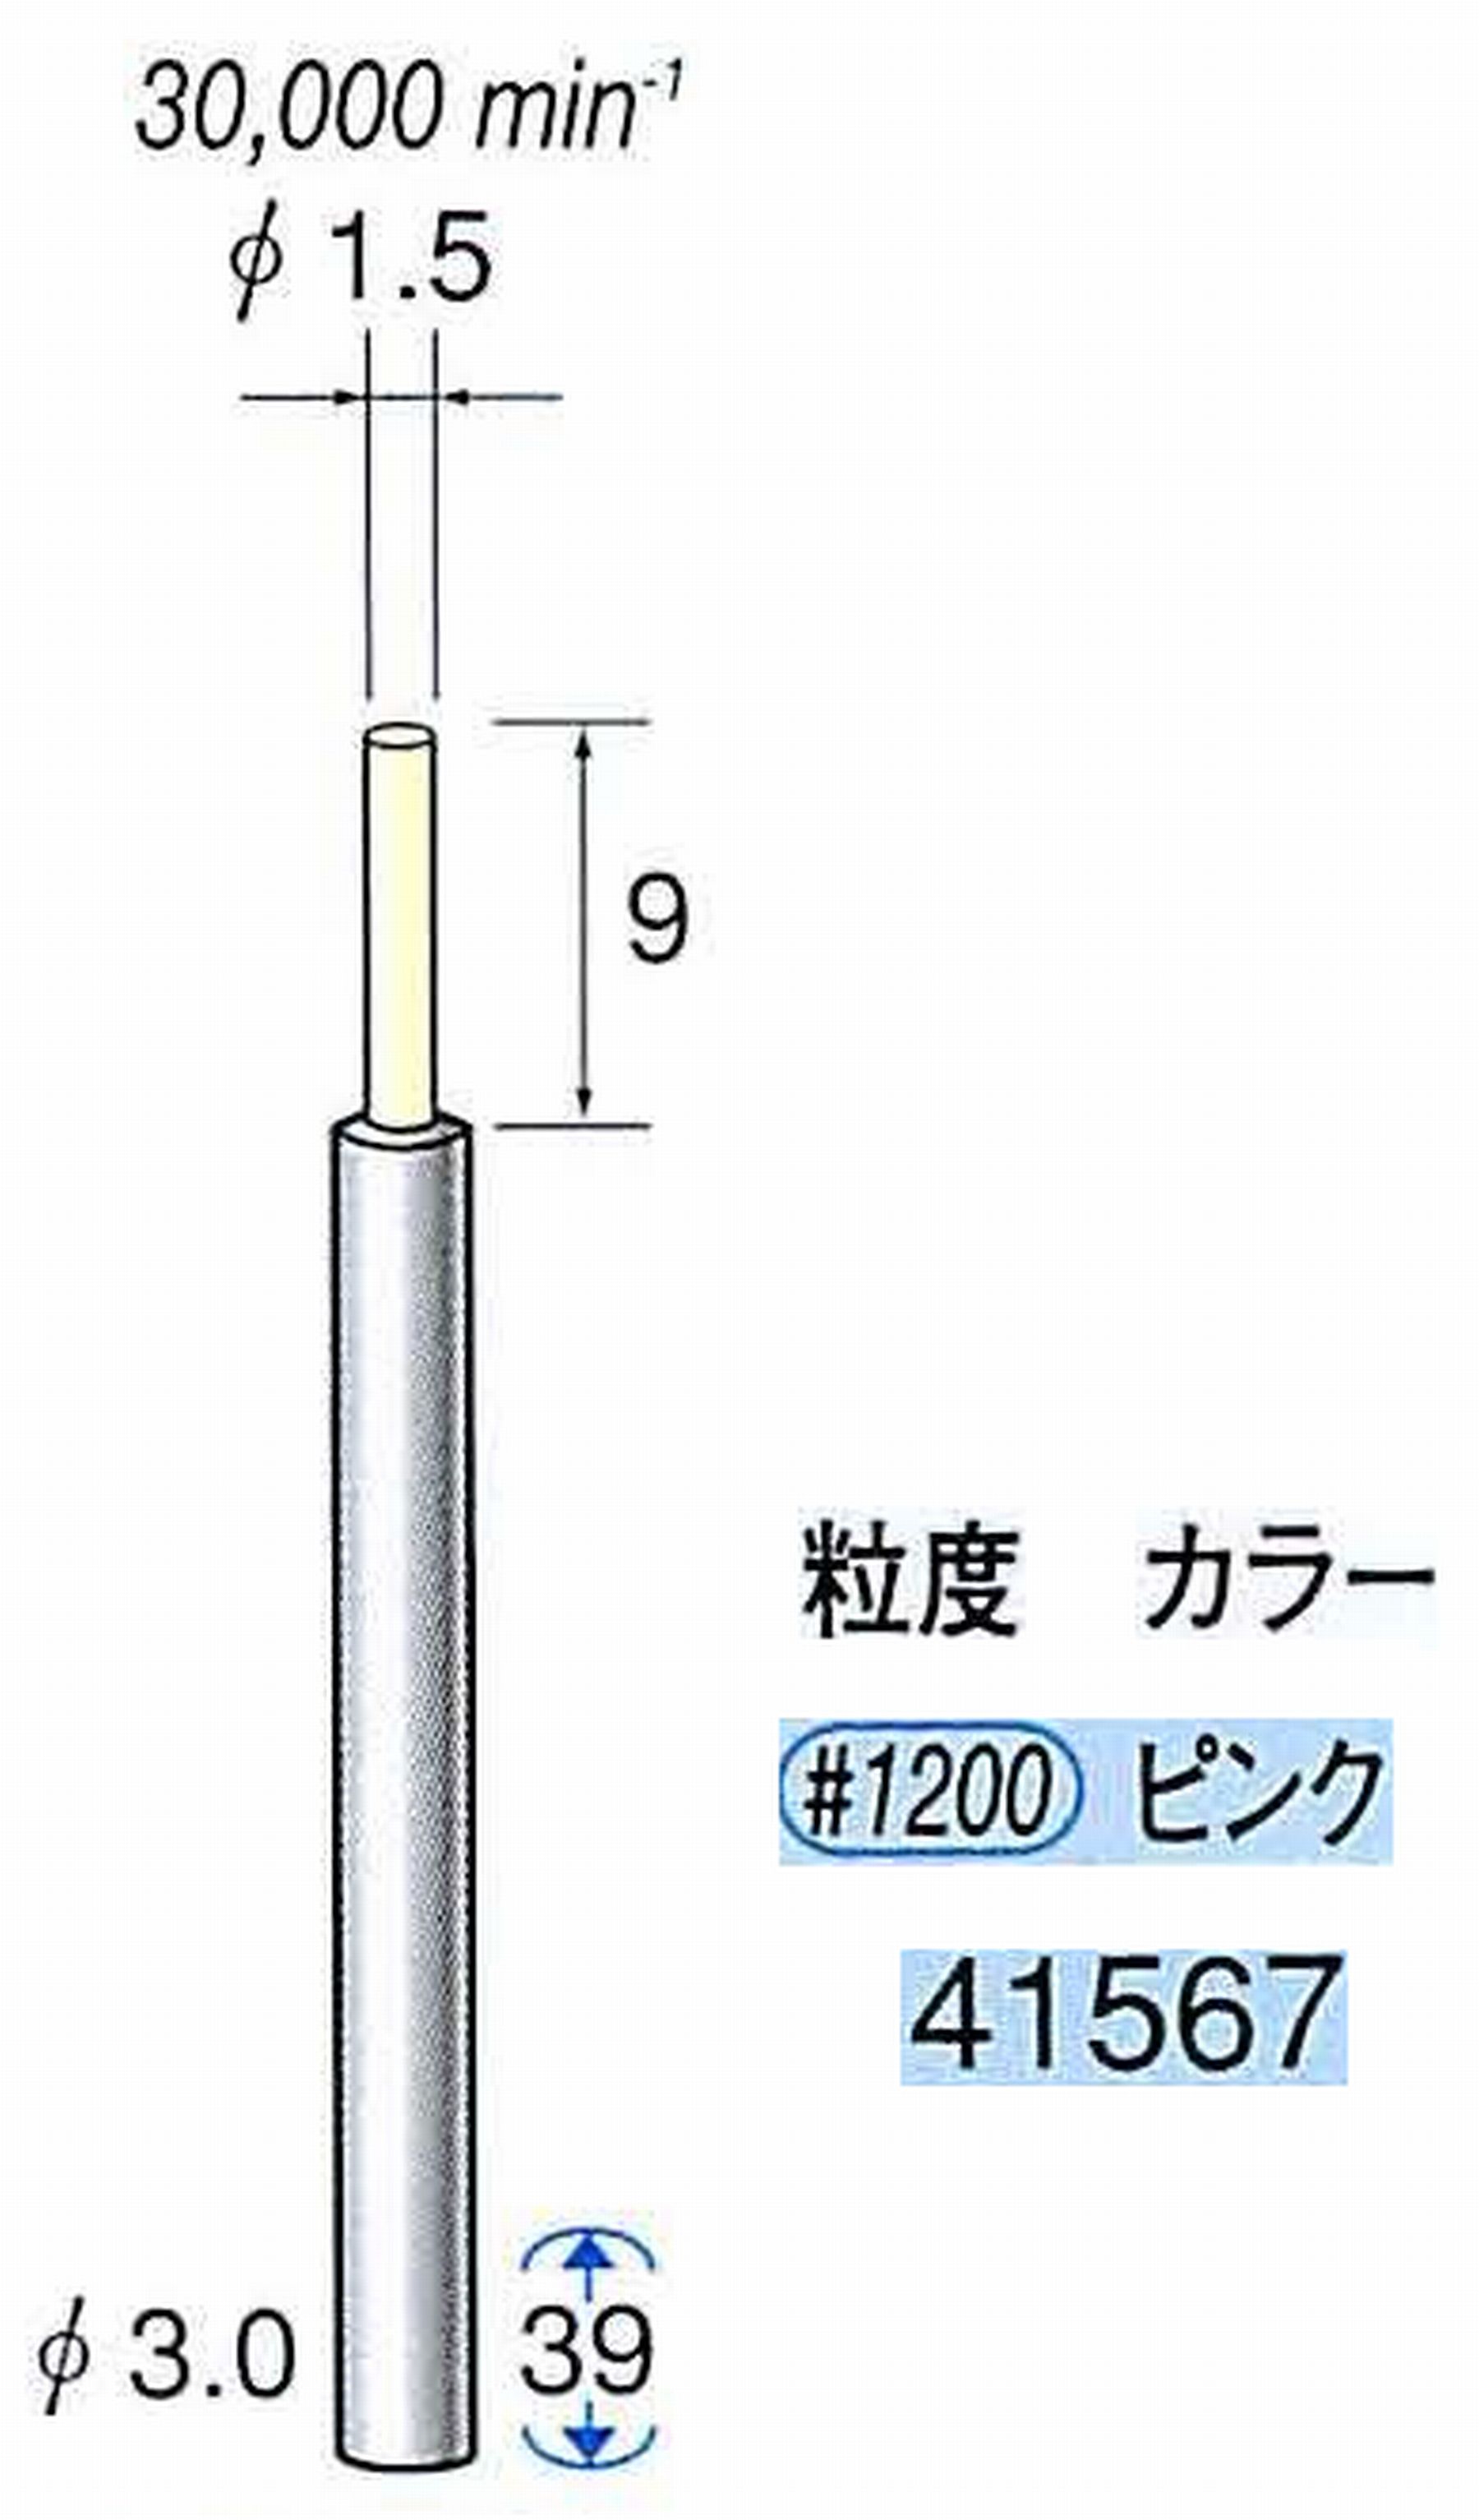 ナカニシ/NAKANISHI セラファイバー精密軸付砥石(カラー ピンク) 軸径(シャンク) φ3.0mm 41567